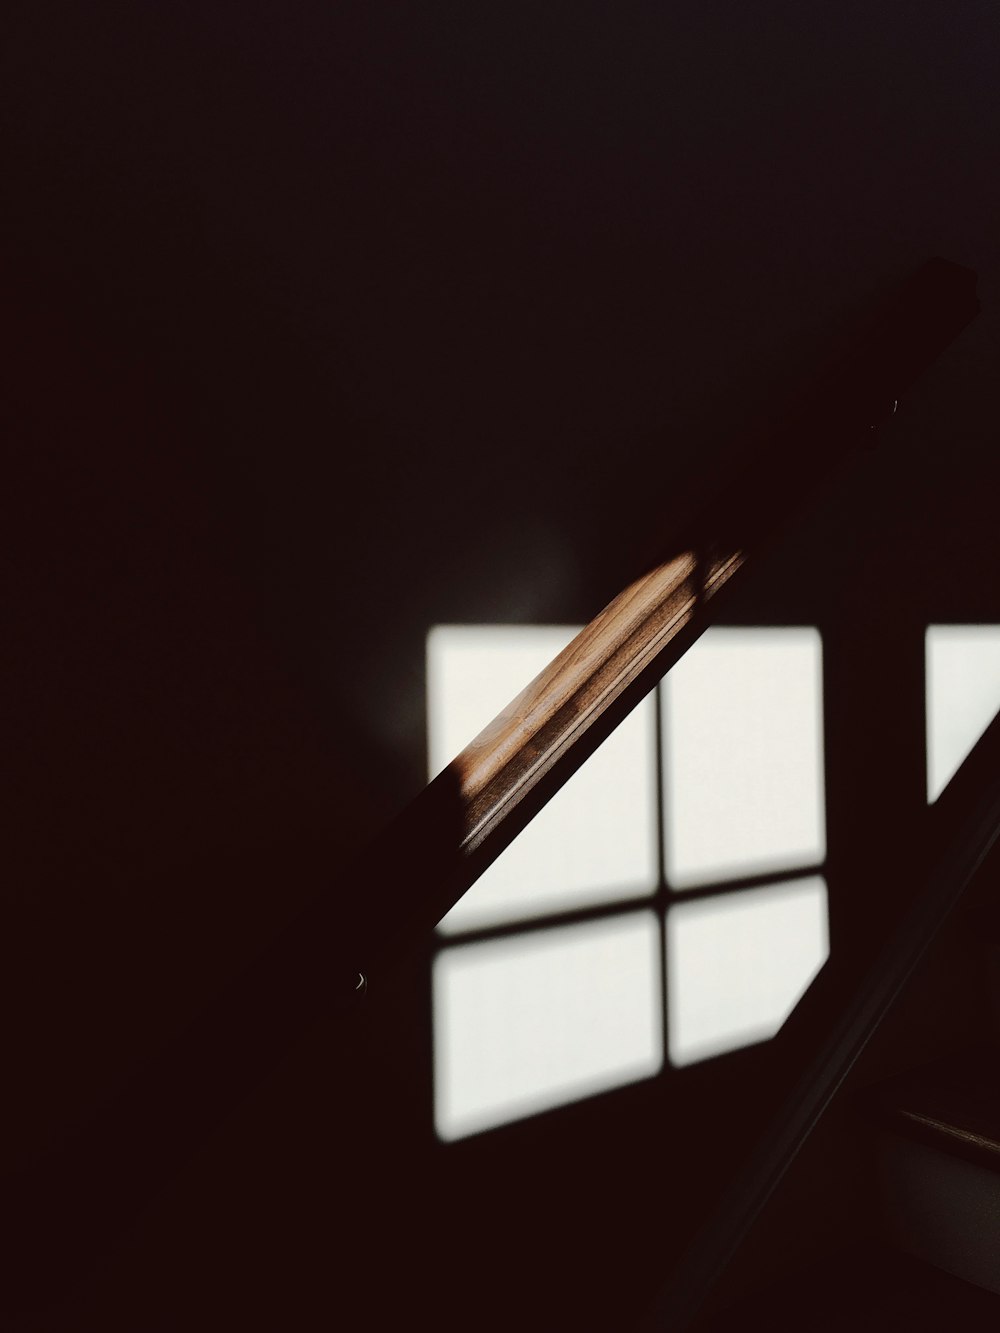 Plan faible d’une rampe en bois éclairée par une faible lumière provenant de la fenêtre